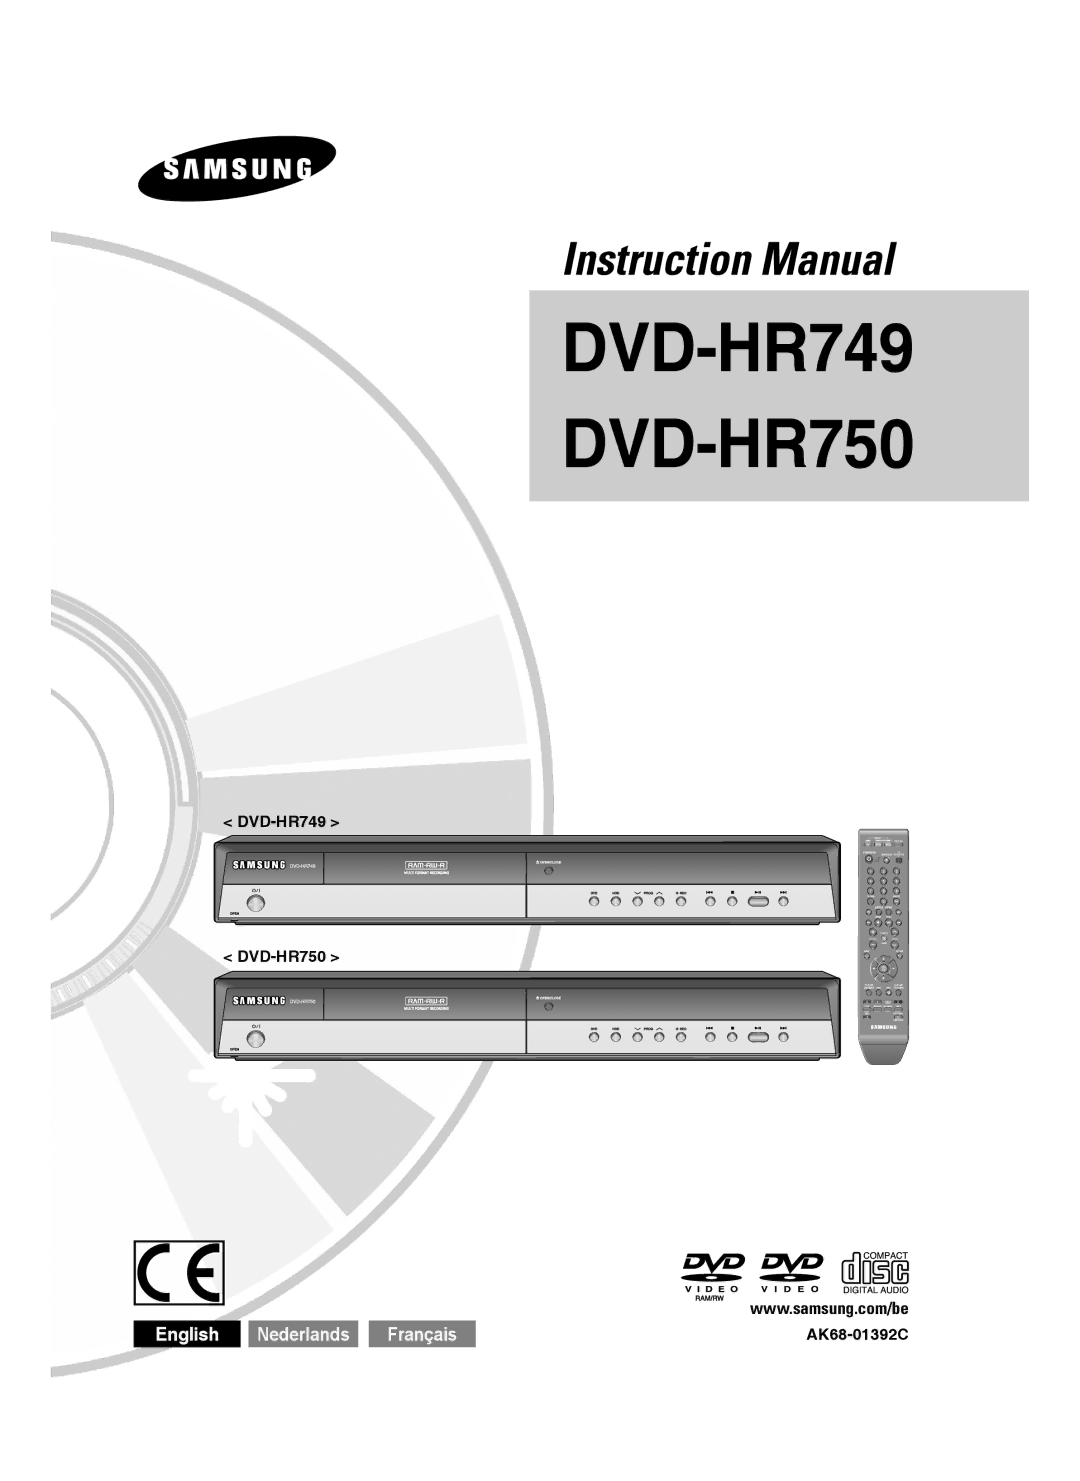 Samsung DVD-HR750/XEB, DVD-HR750/XEG, DVD-HR750/AUS manual DVD-HR749 DVD-HR750 